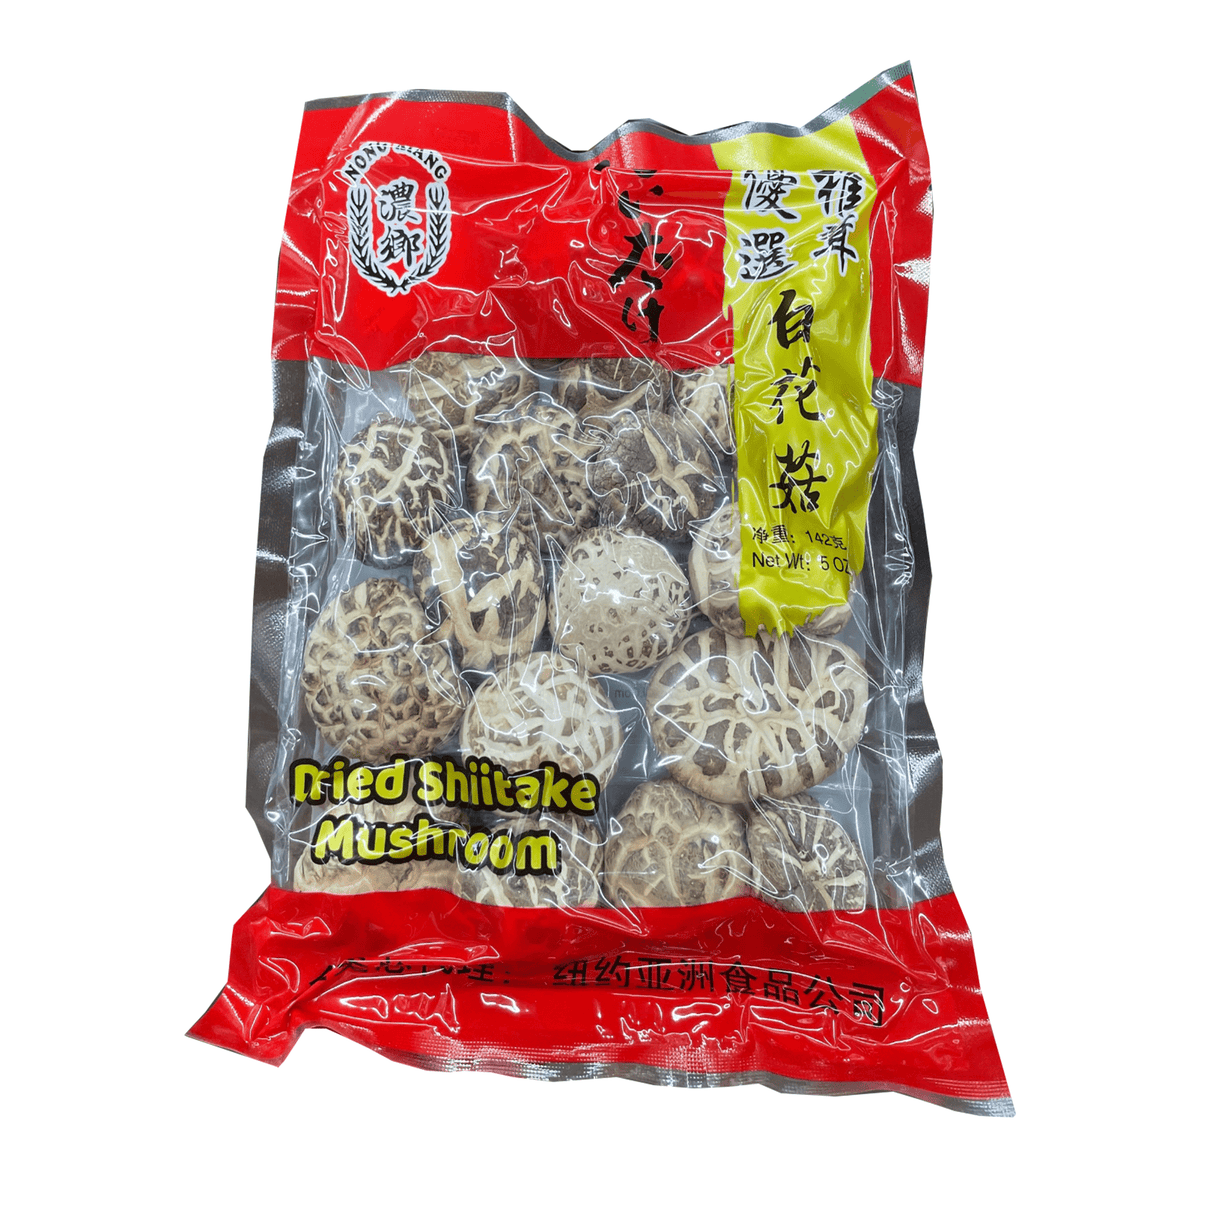 Nong Xiang Dried Shiitake Mushroom